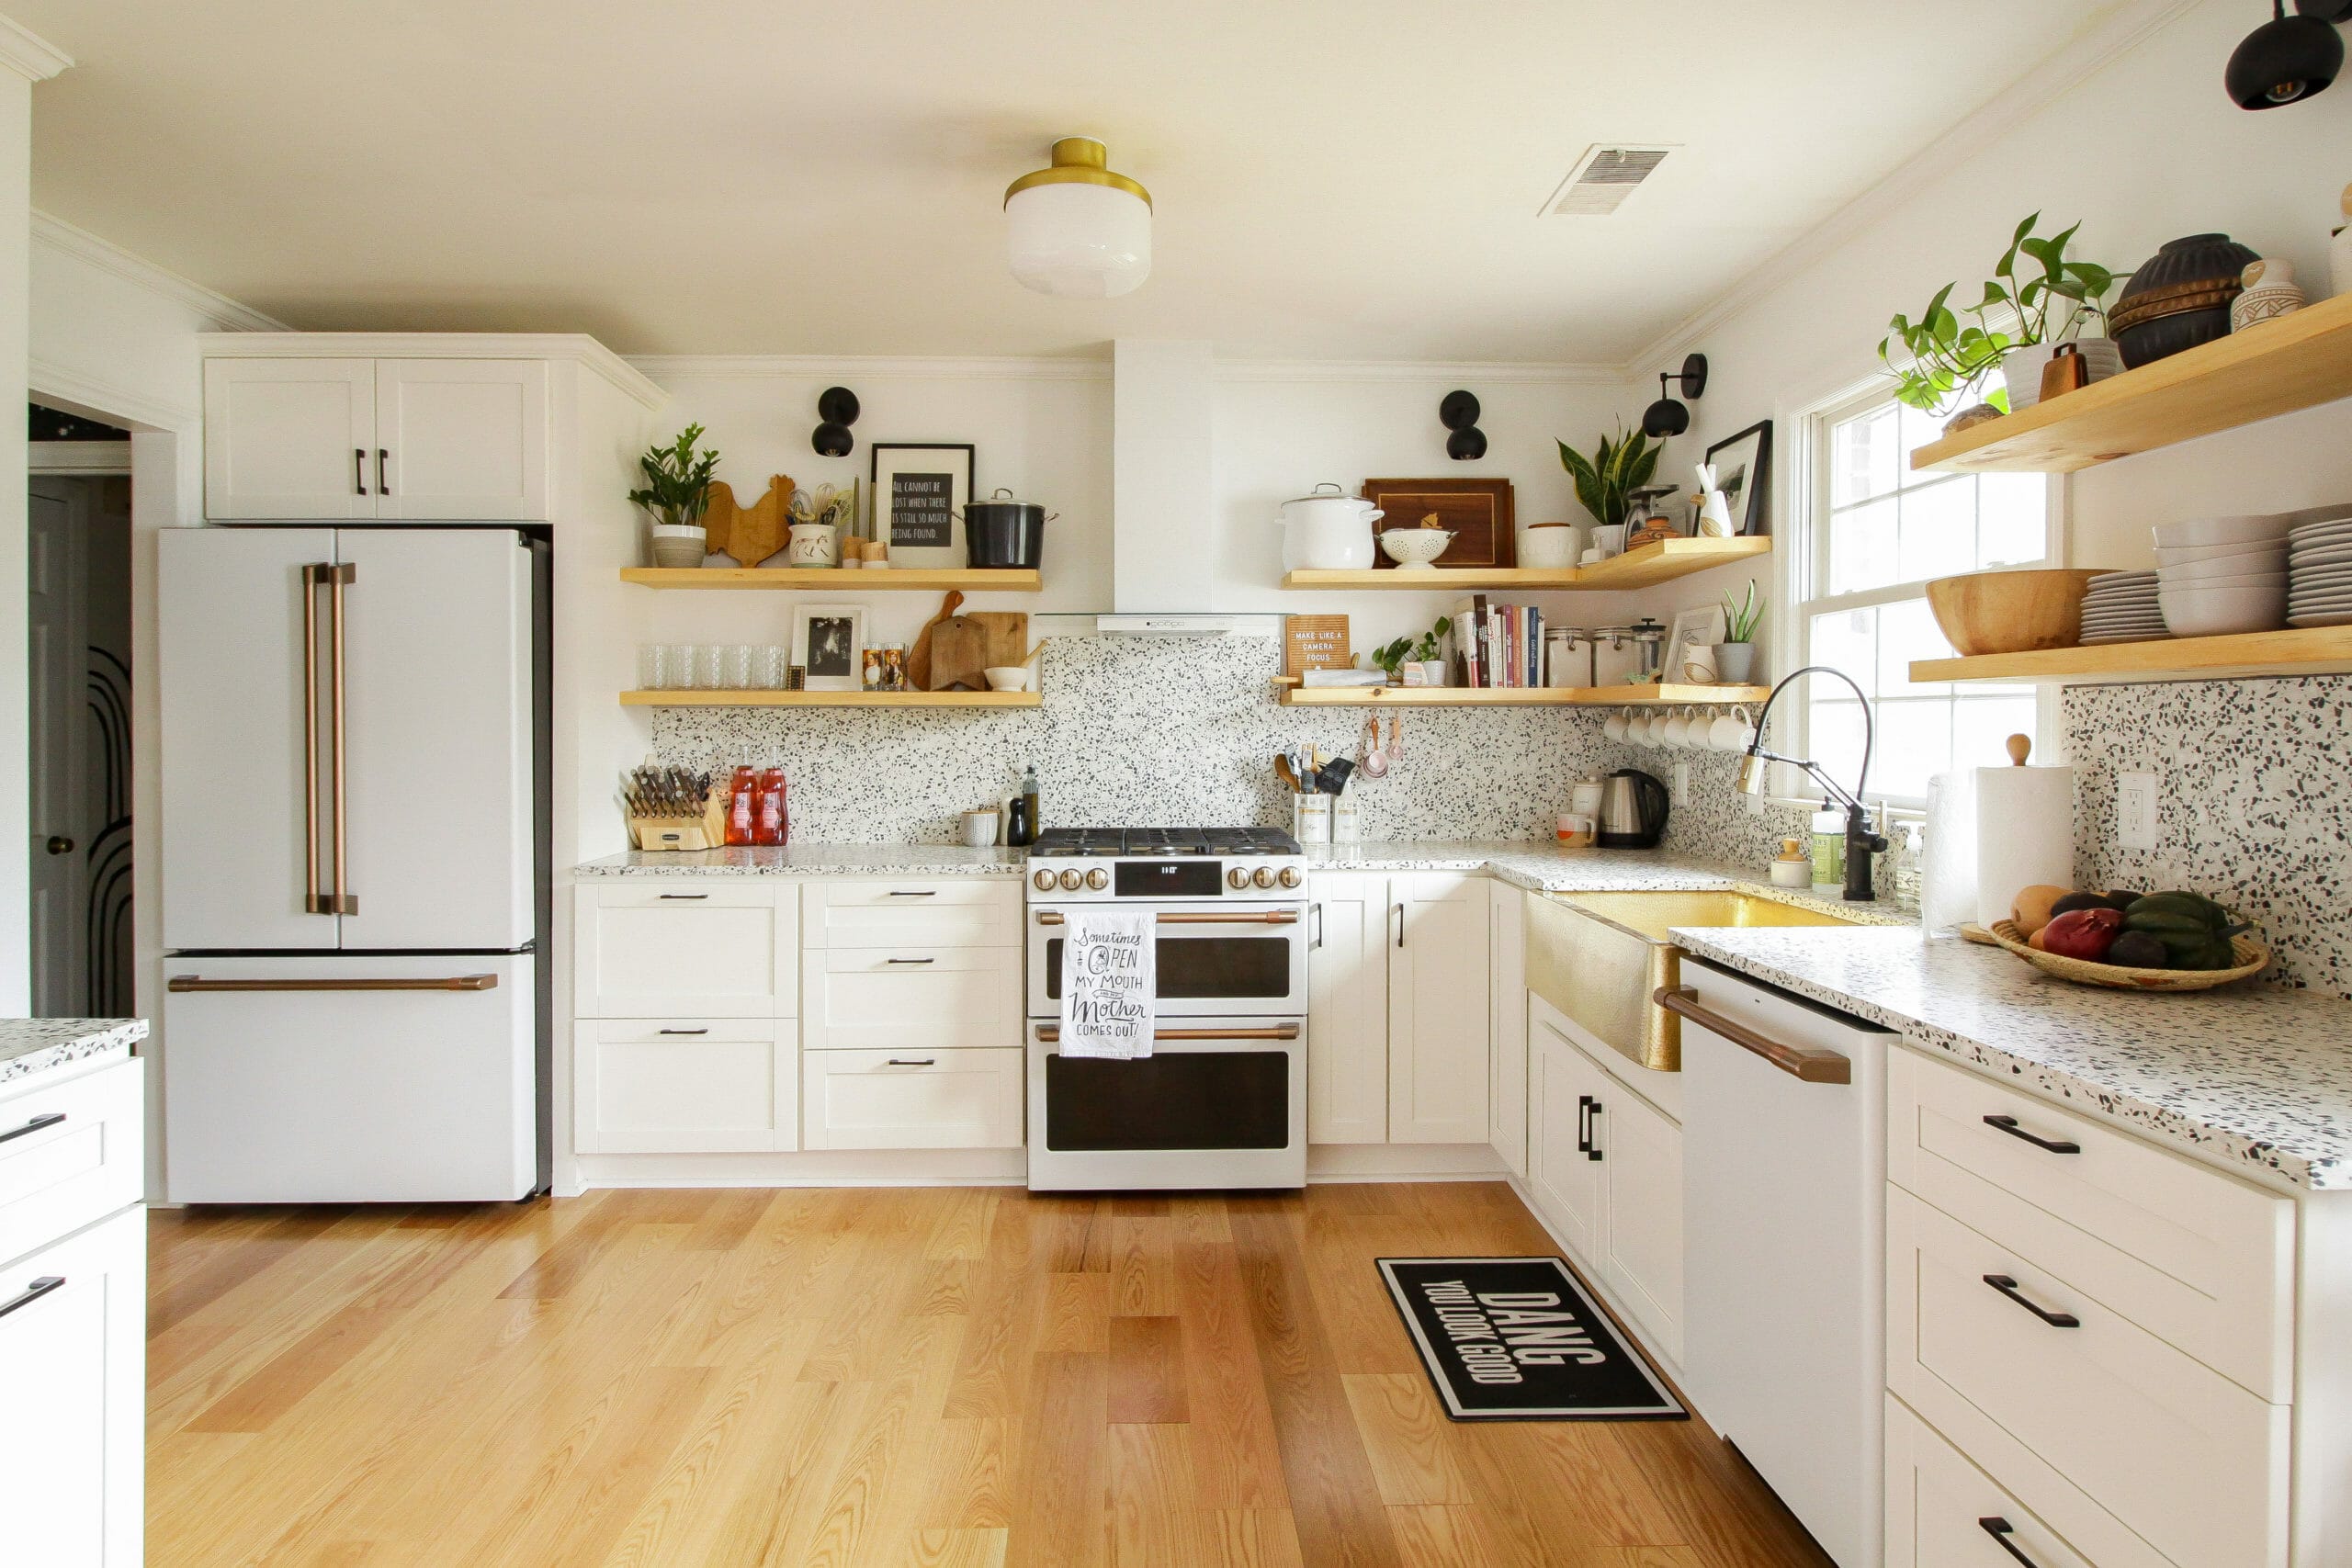 https://eyqutuda73b.exactdn.com/wp-content/uploads/2020/01/total-kitchen-remodel-scaled.jpg